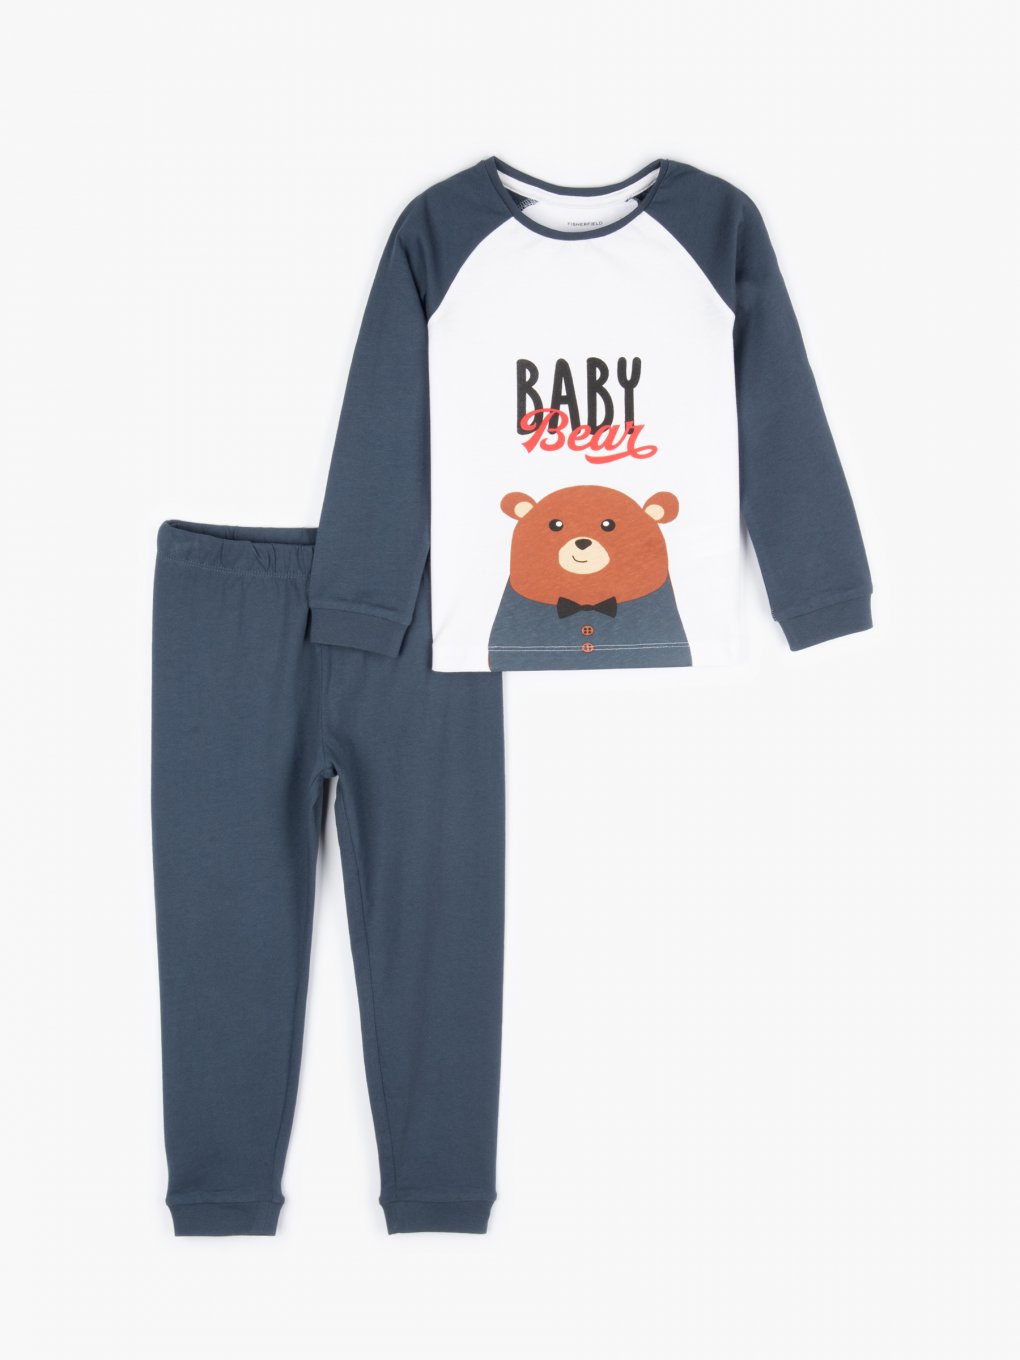 Baby bear pyjamas